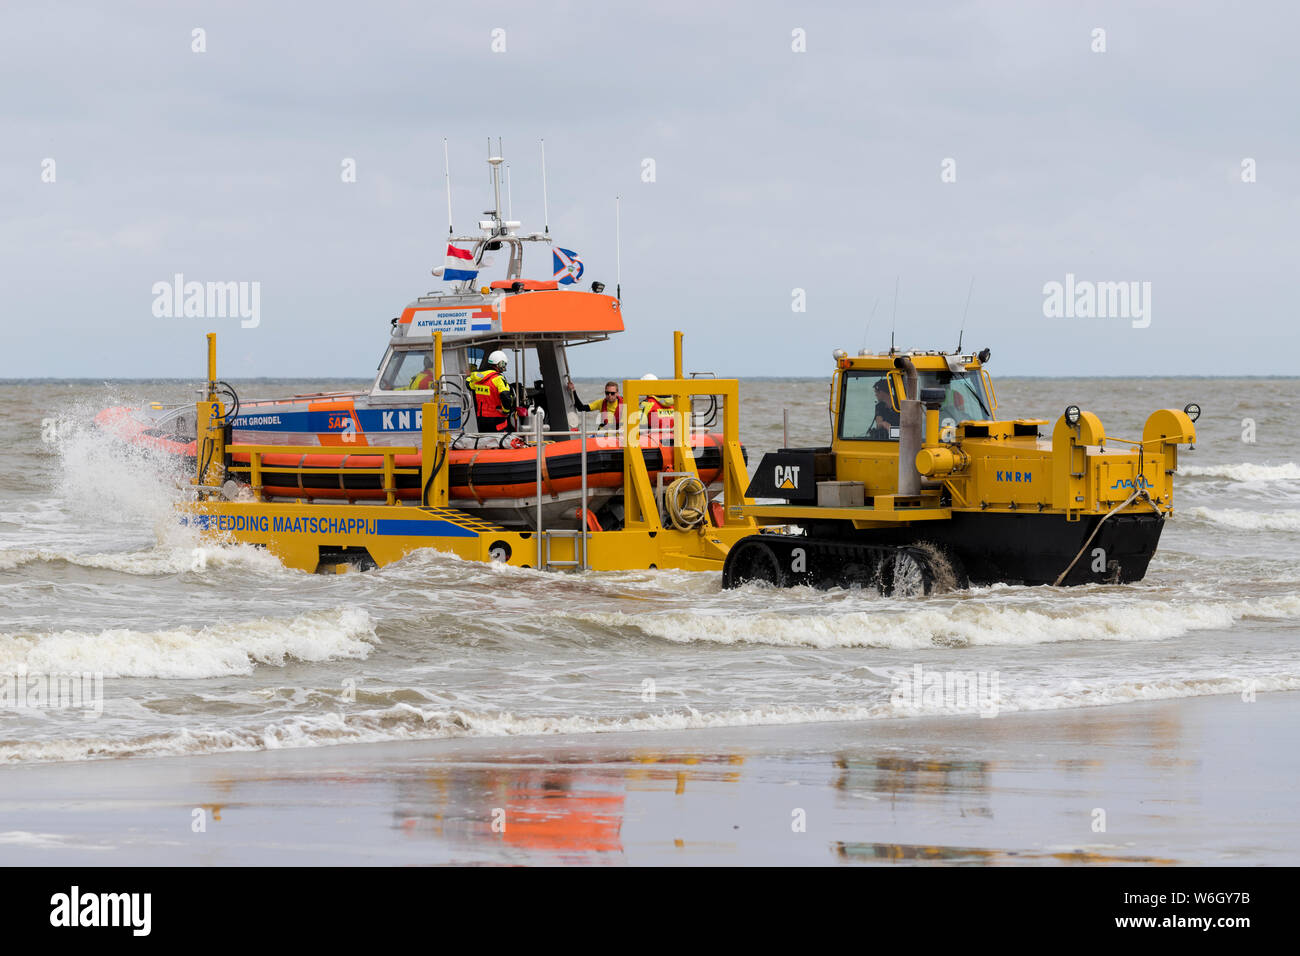 KNRM Rettungsboot EDITH GRONDEL eingeleitet. KNRM ist die freiwillige Organisation in den Niederlanden mit der Aufgabe, die Rettung von Leben auf See. Stockfoto